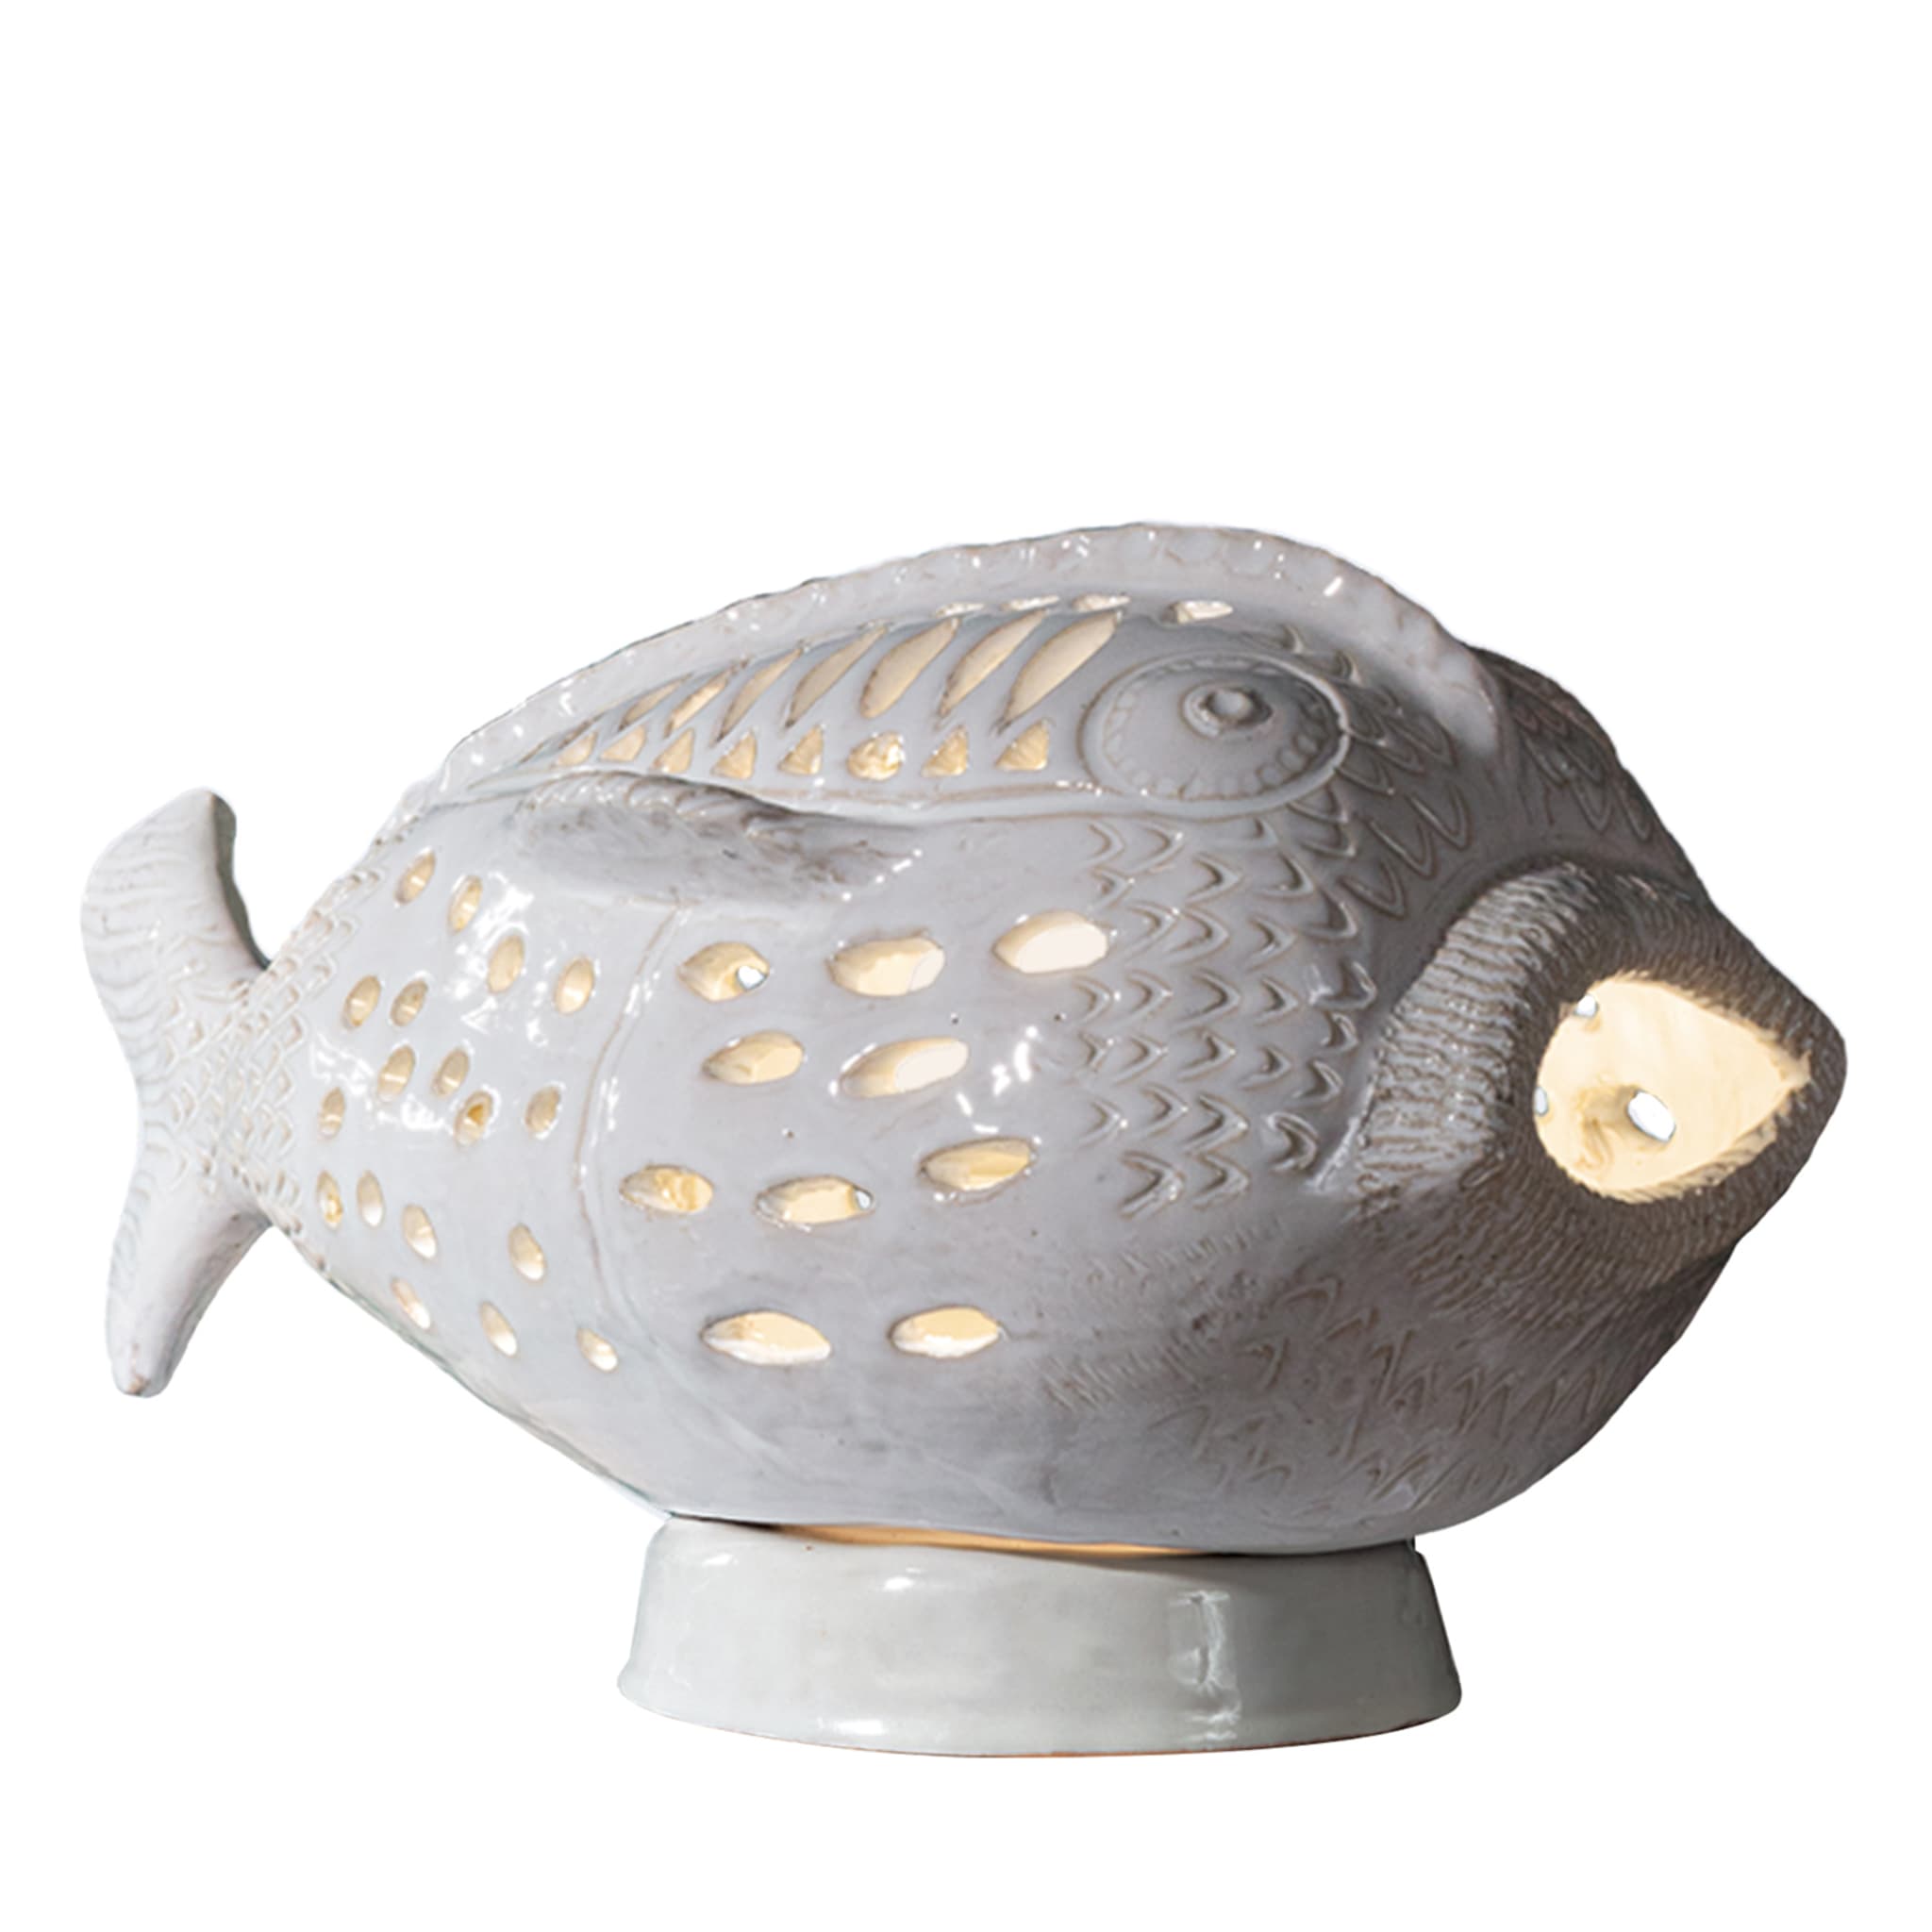 Perle Marine Pesce Pagliaccio N.6 Weiß Tischlampe - Hauptansicht